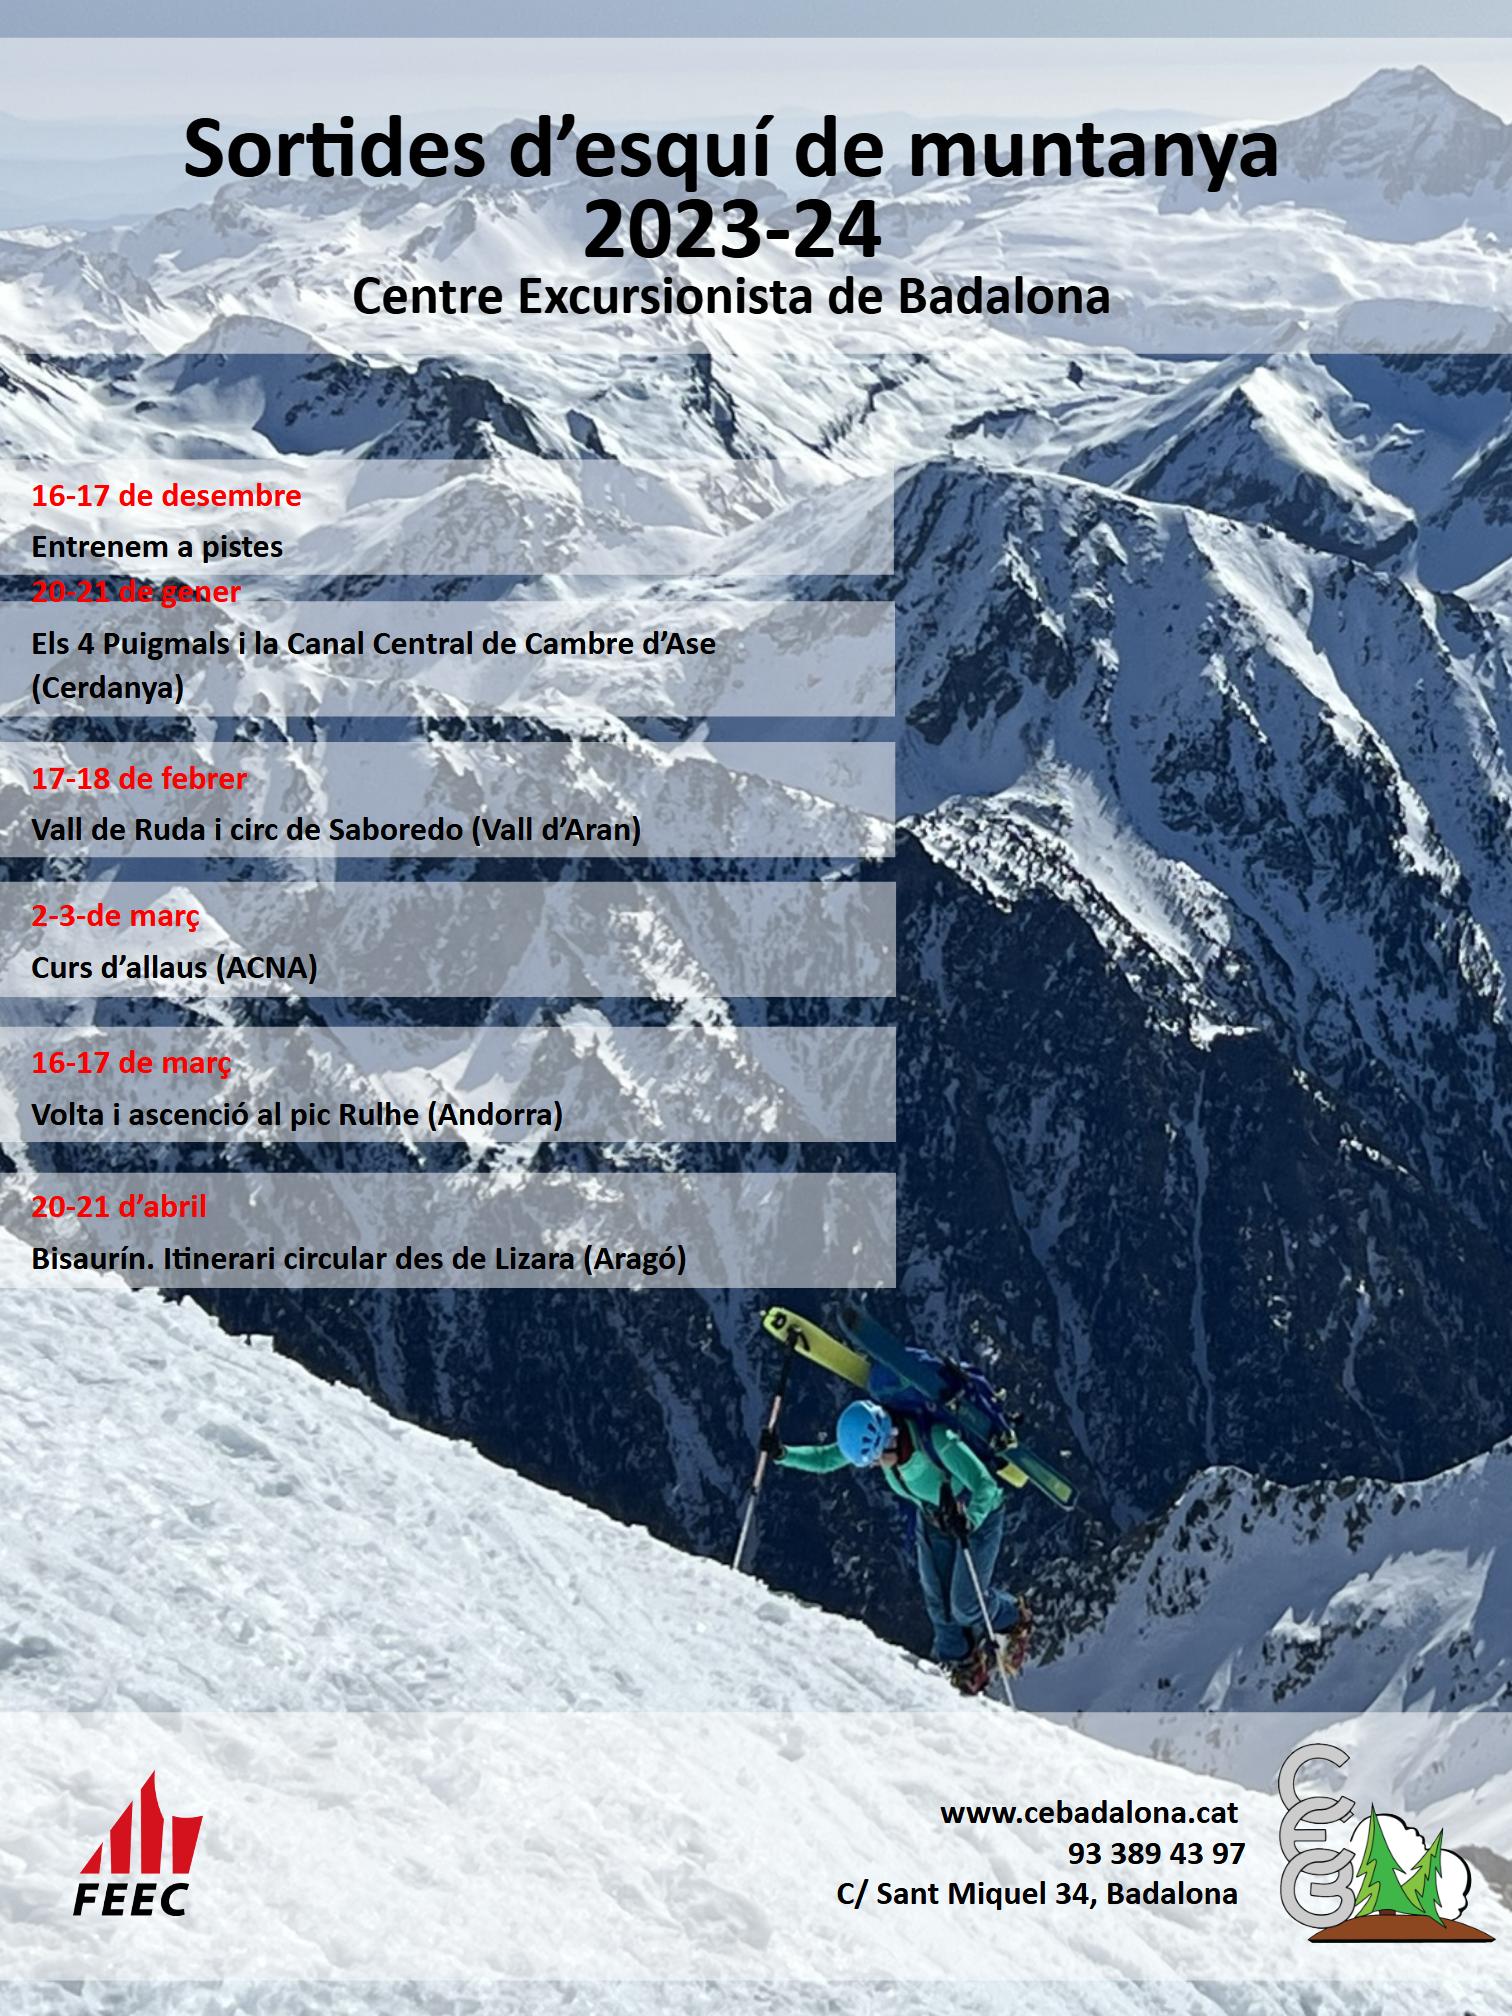 Calendari sortides esquí 2023-2024